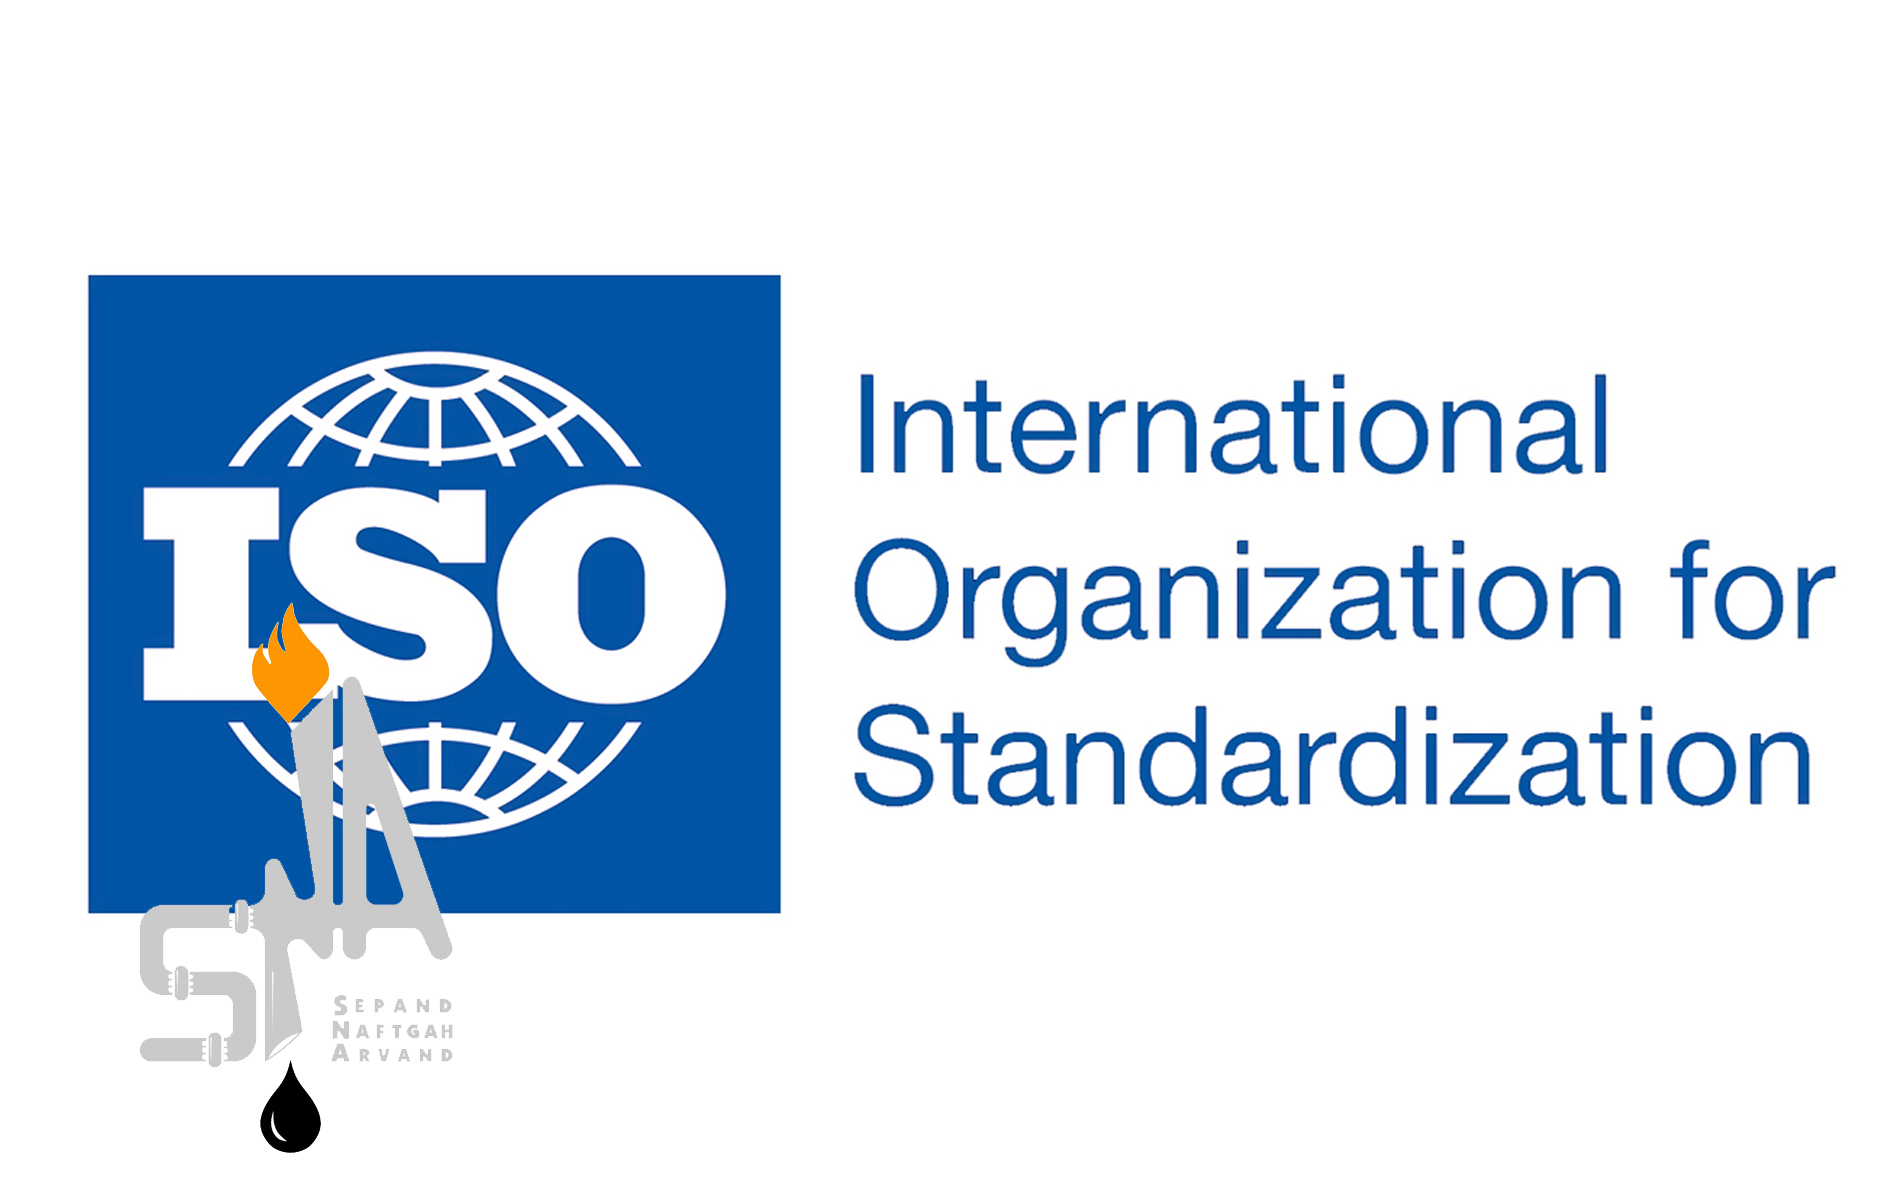 استاندارد ISO